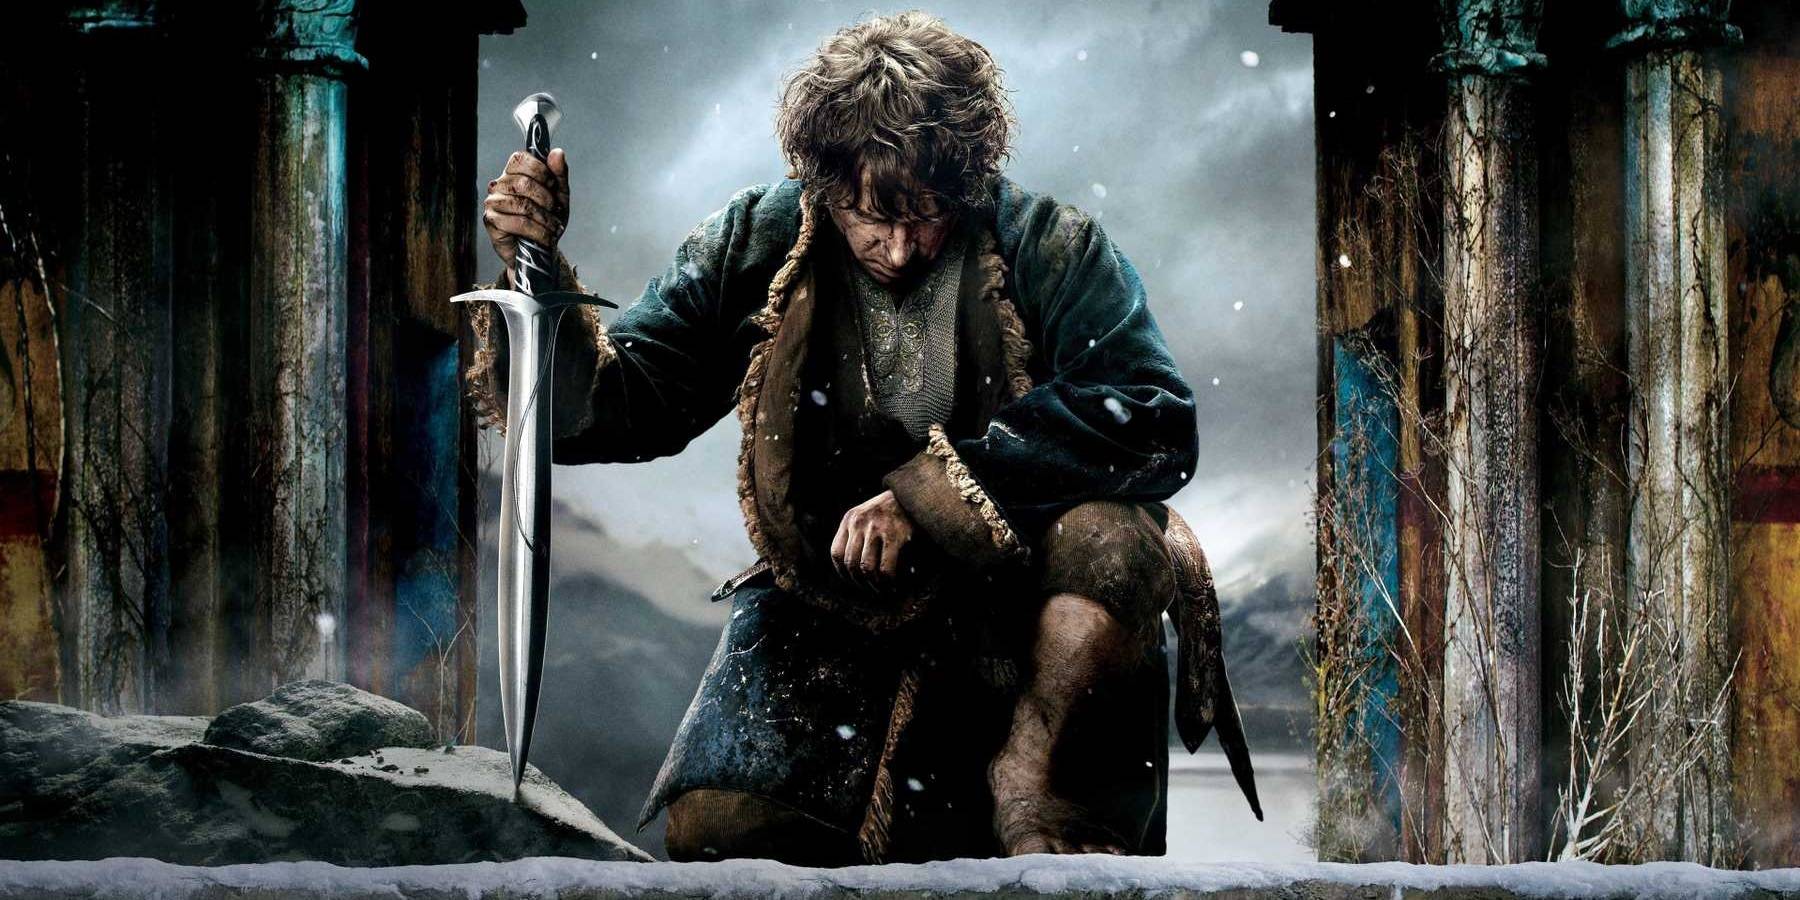  A Hobbit Az öt sereg csatája